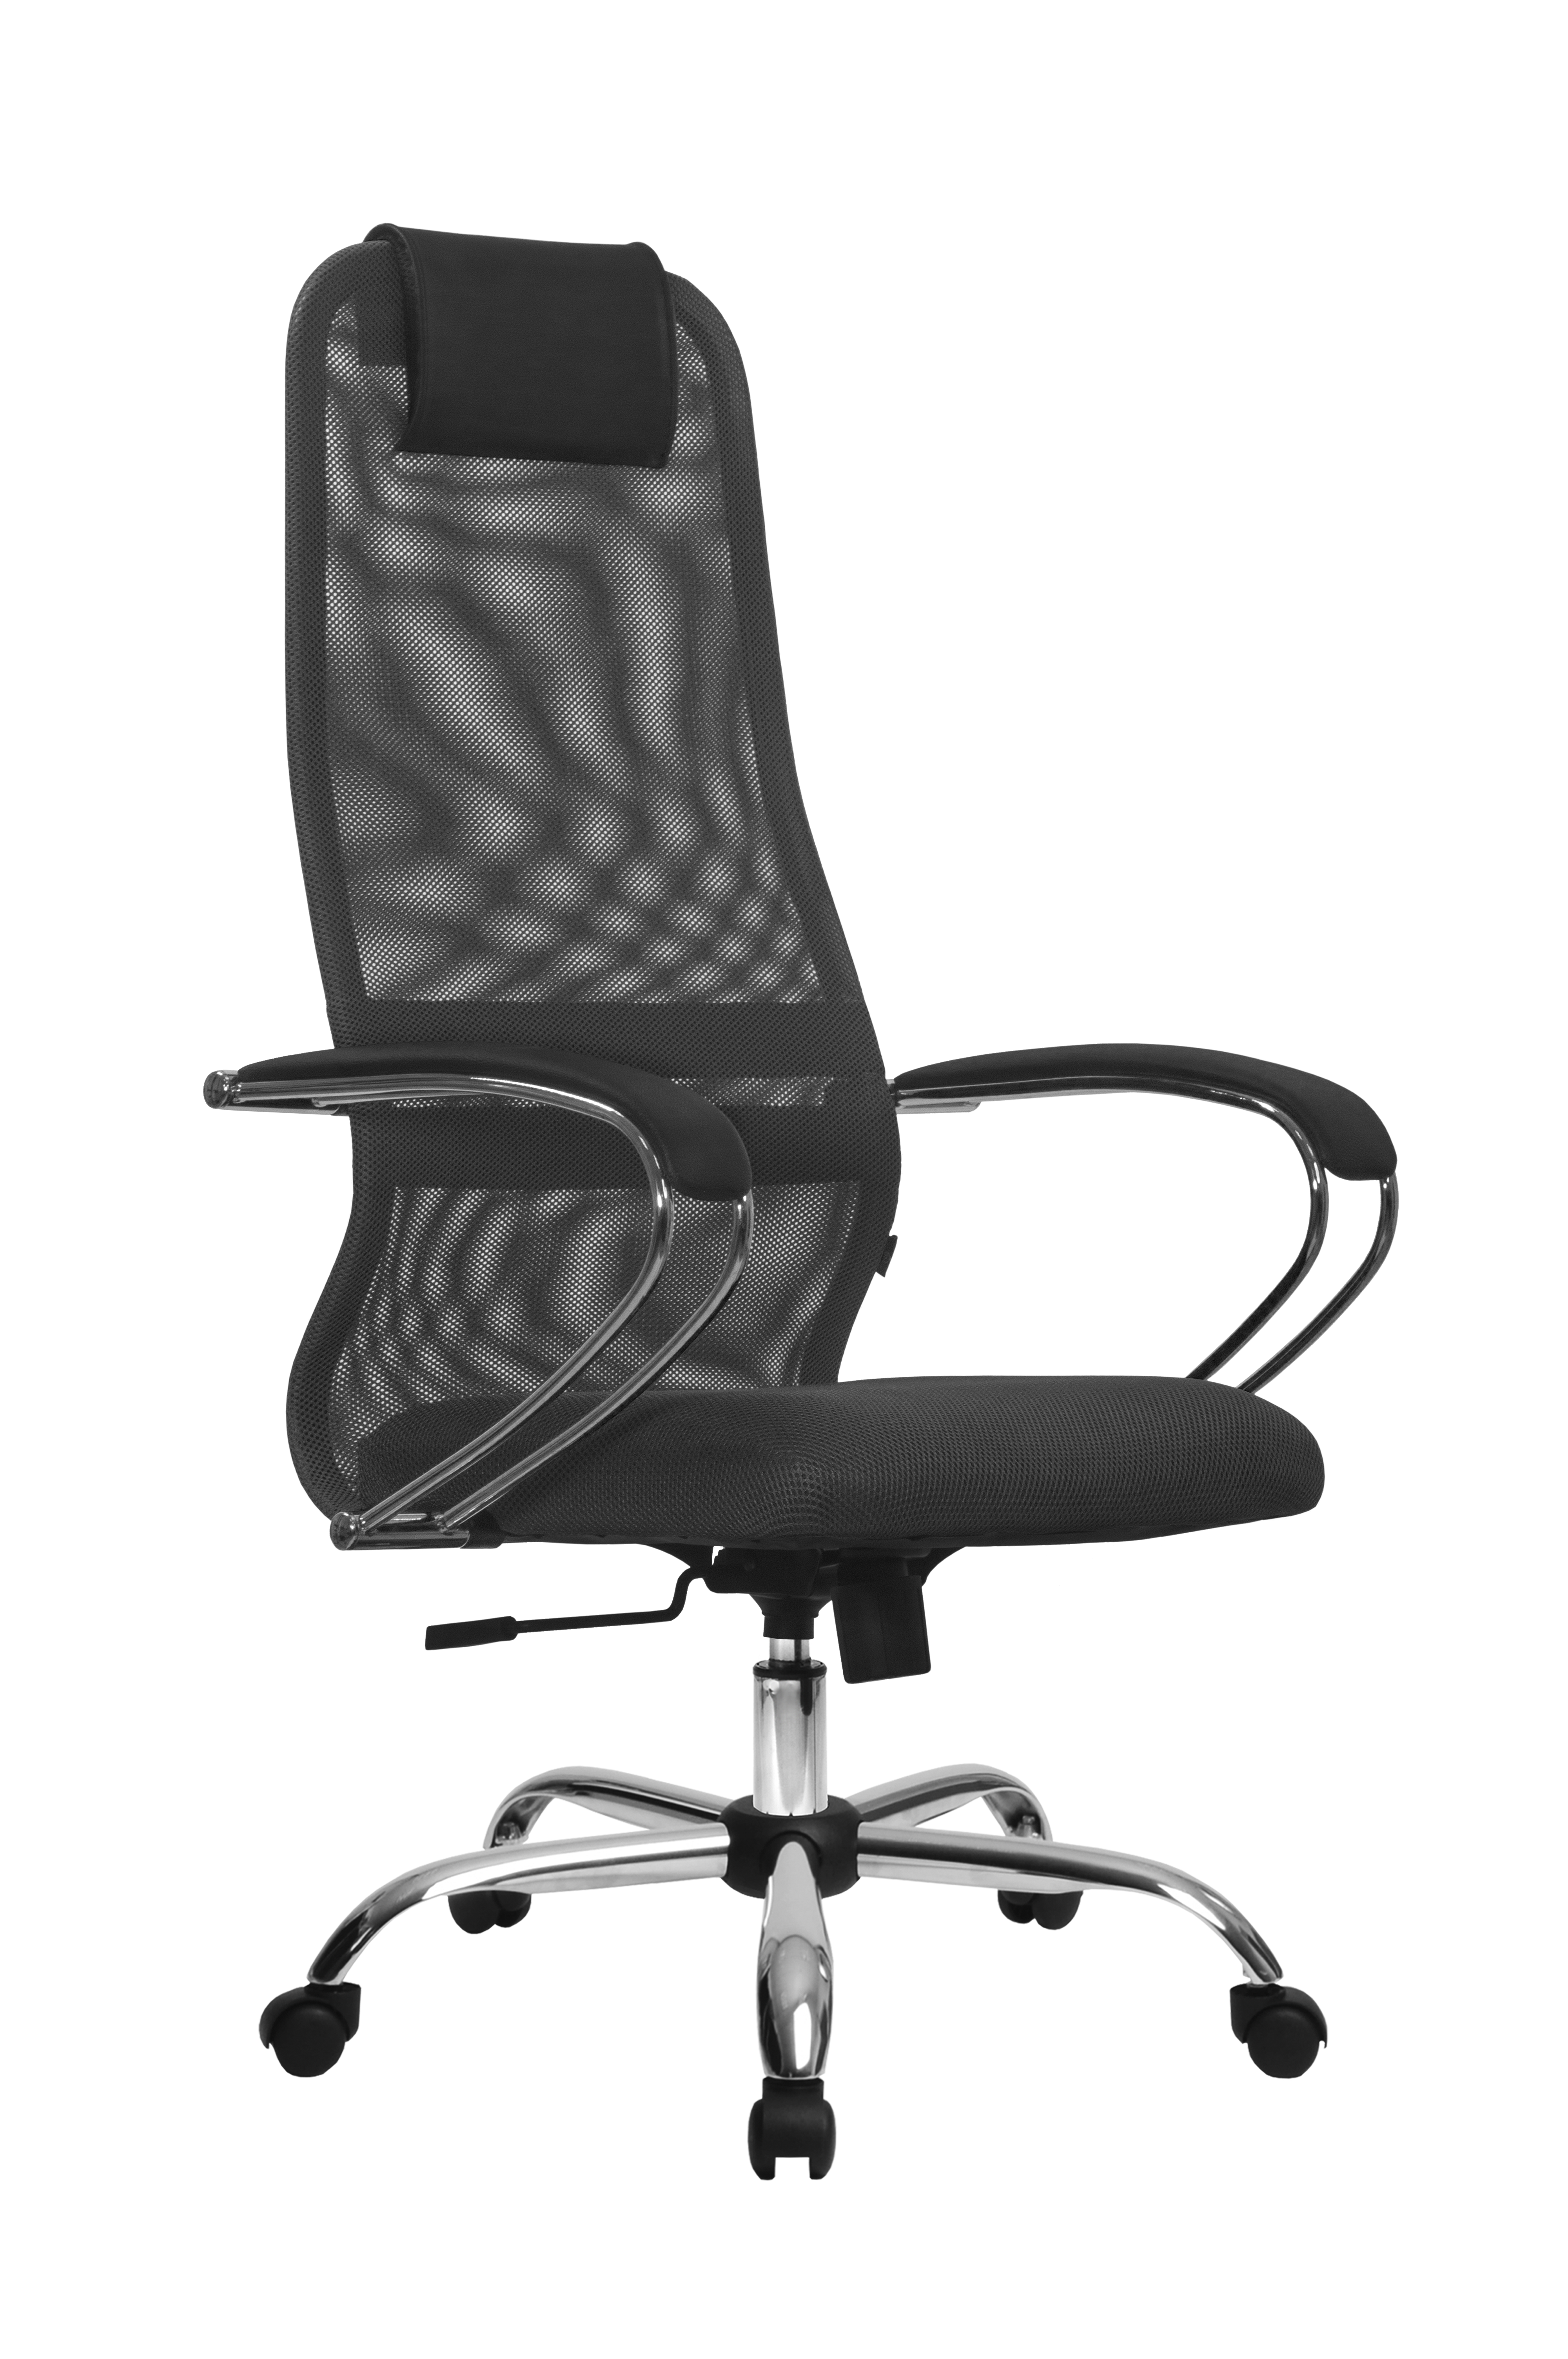 90489229 Офисное кресло Su прочный сетчатый материал цвет темно-серый z312469301 STLM-0248890 МЕТТА